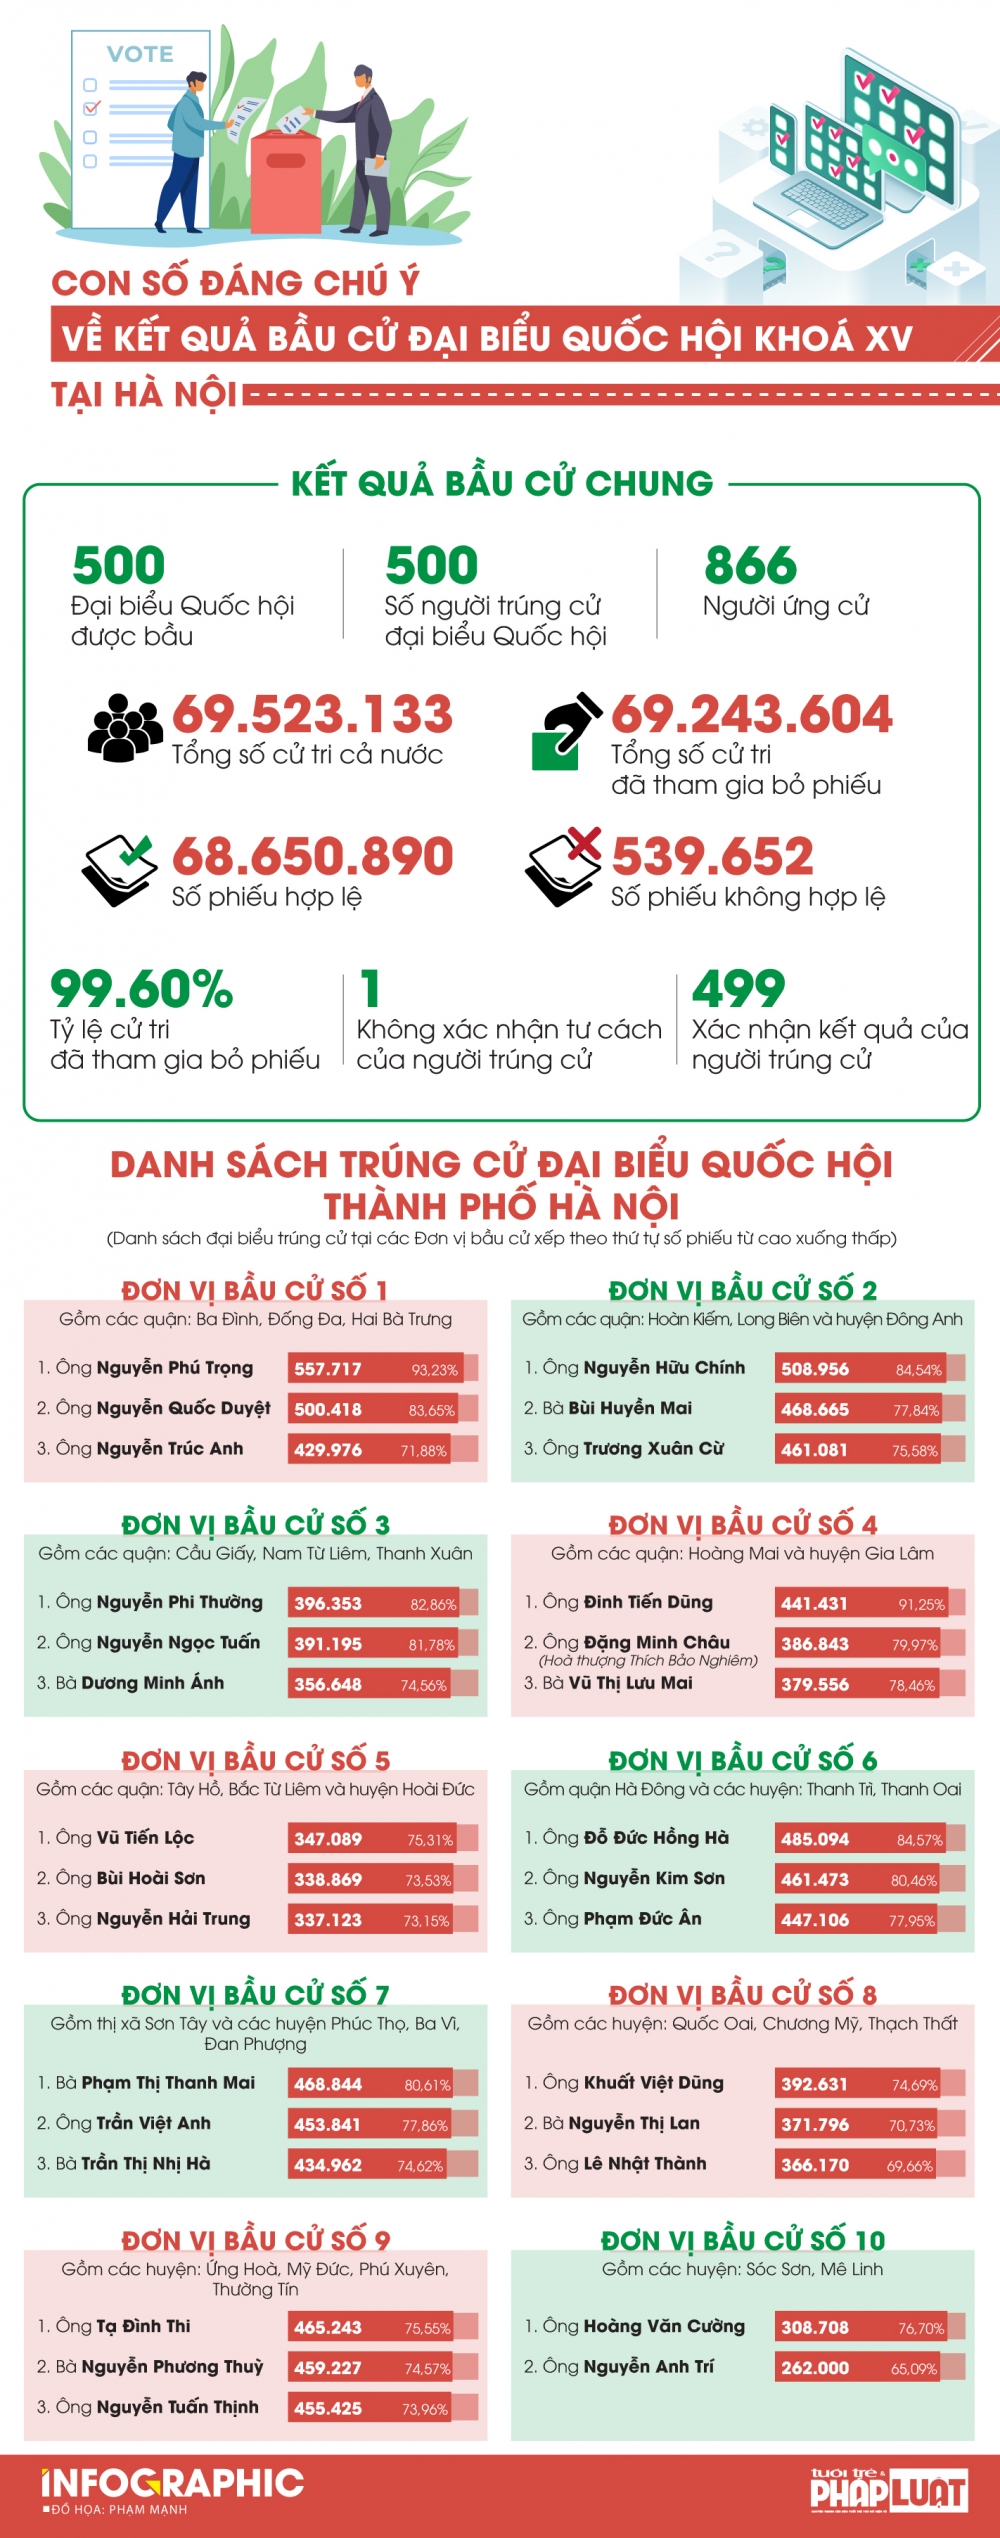 Chi tiết số phiếu bầu 29 đại biểu Quốc hội khóa XV thành phố Hà Nội